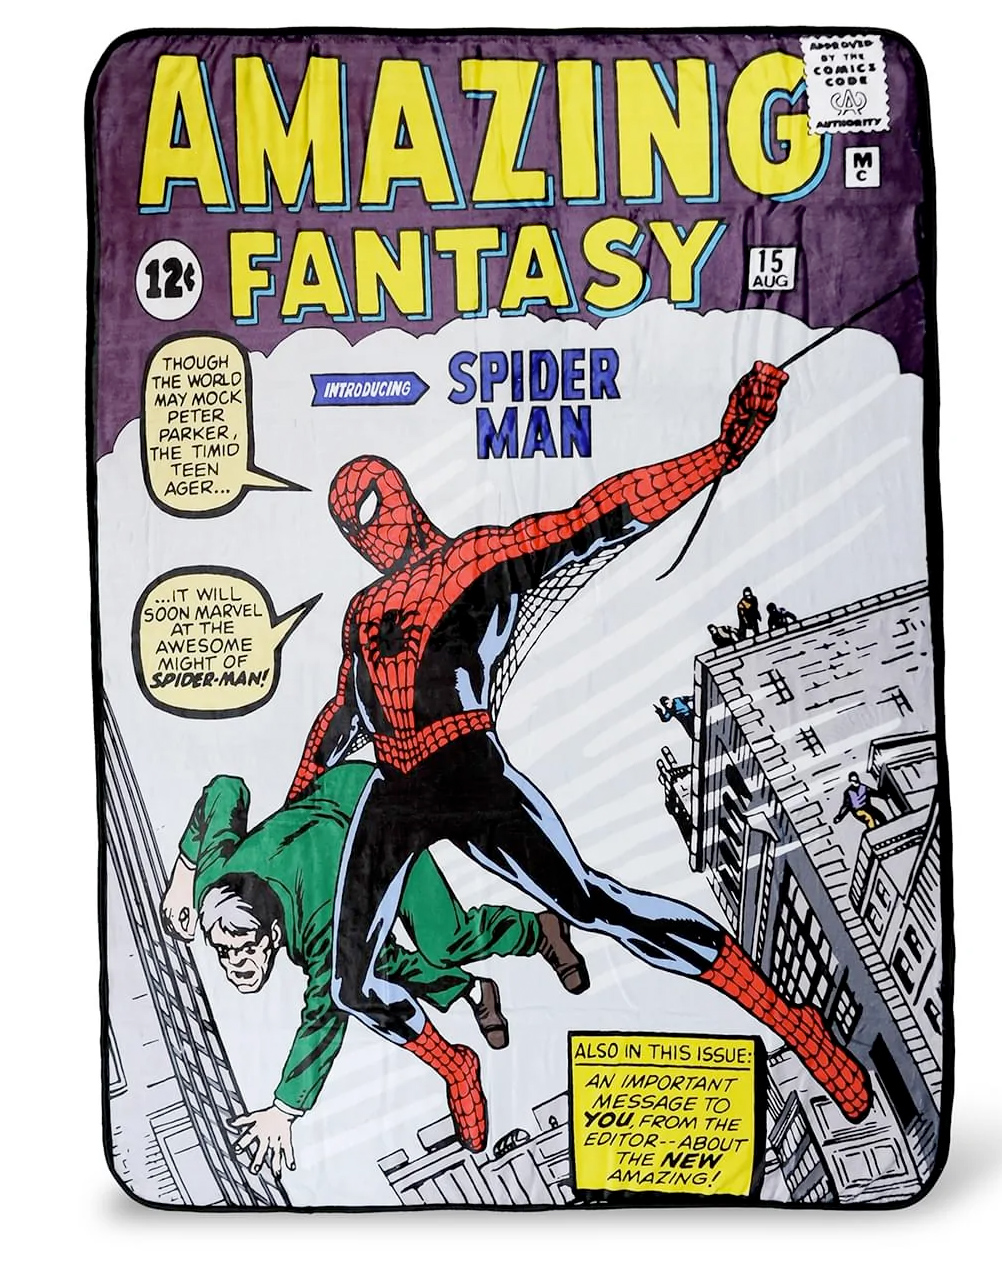 Cobertor de Lance Homem-Aranha na Capa da Amazing Fantasy #15